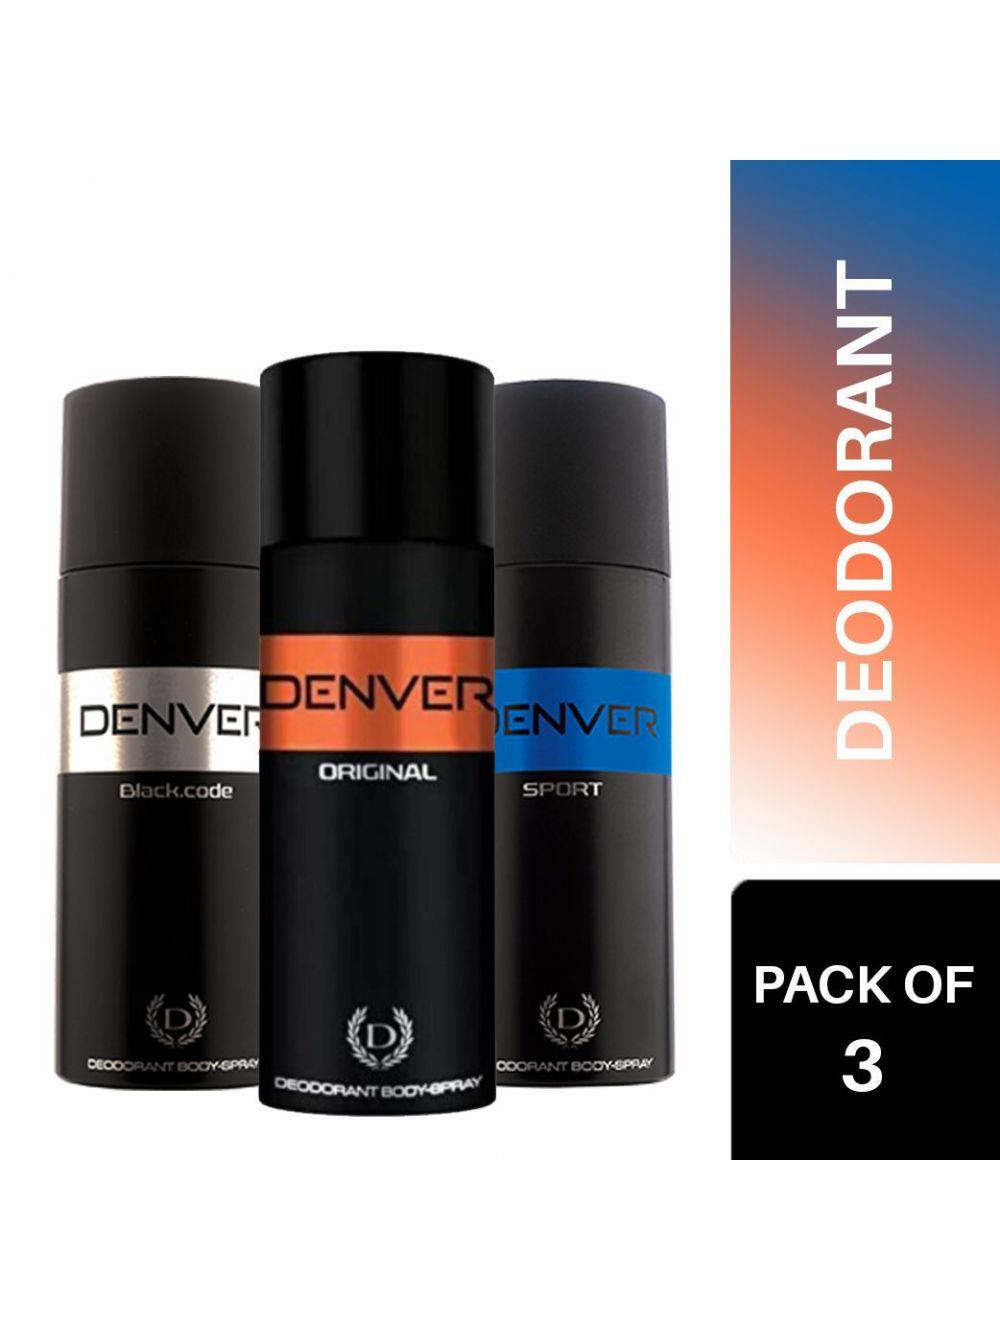 Denver Deodorant Body Spray for Men Combo (Pack of 3) - Niram